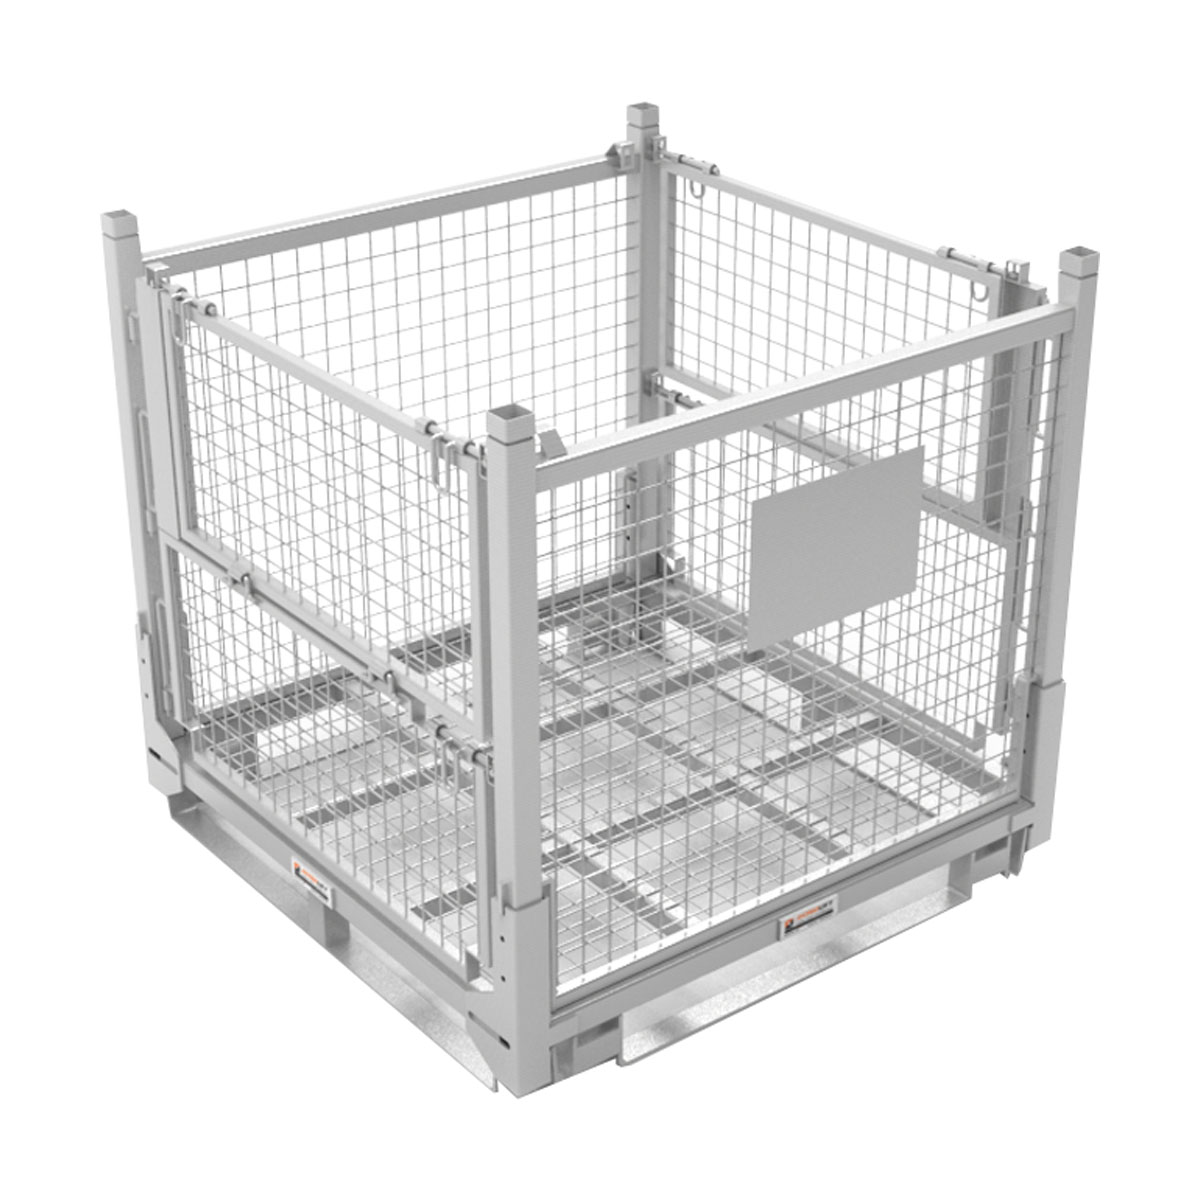 Buy Stillage Cage in Storage / Stillage from Astrolift NZ